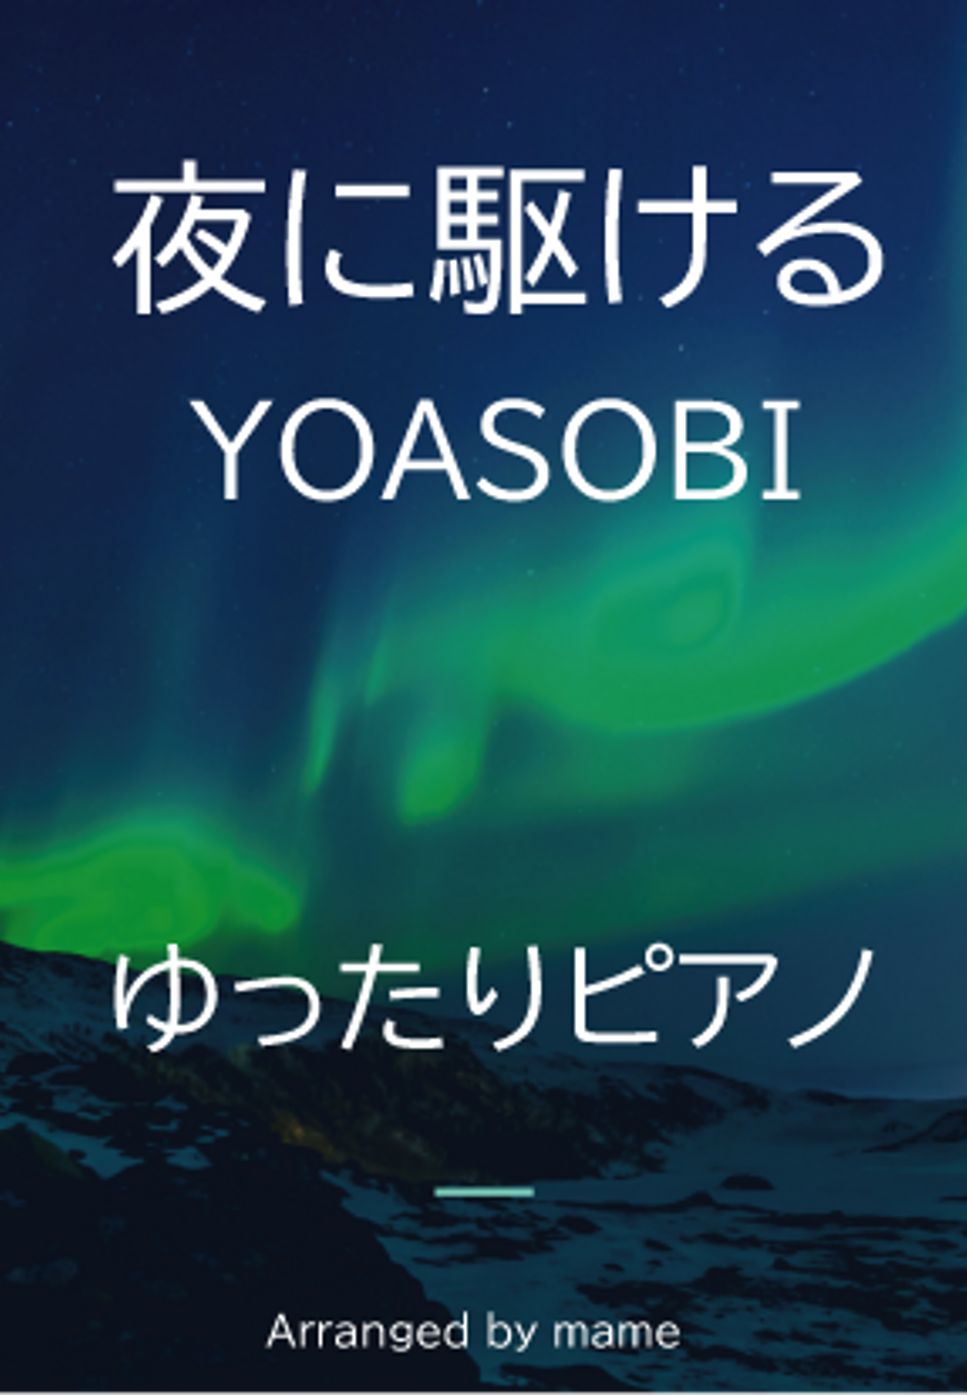 YOASOBI - 夜に駆ける (ゆったりソロピアノ) by mame